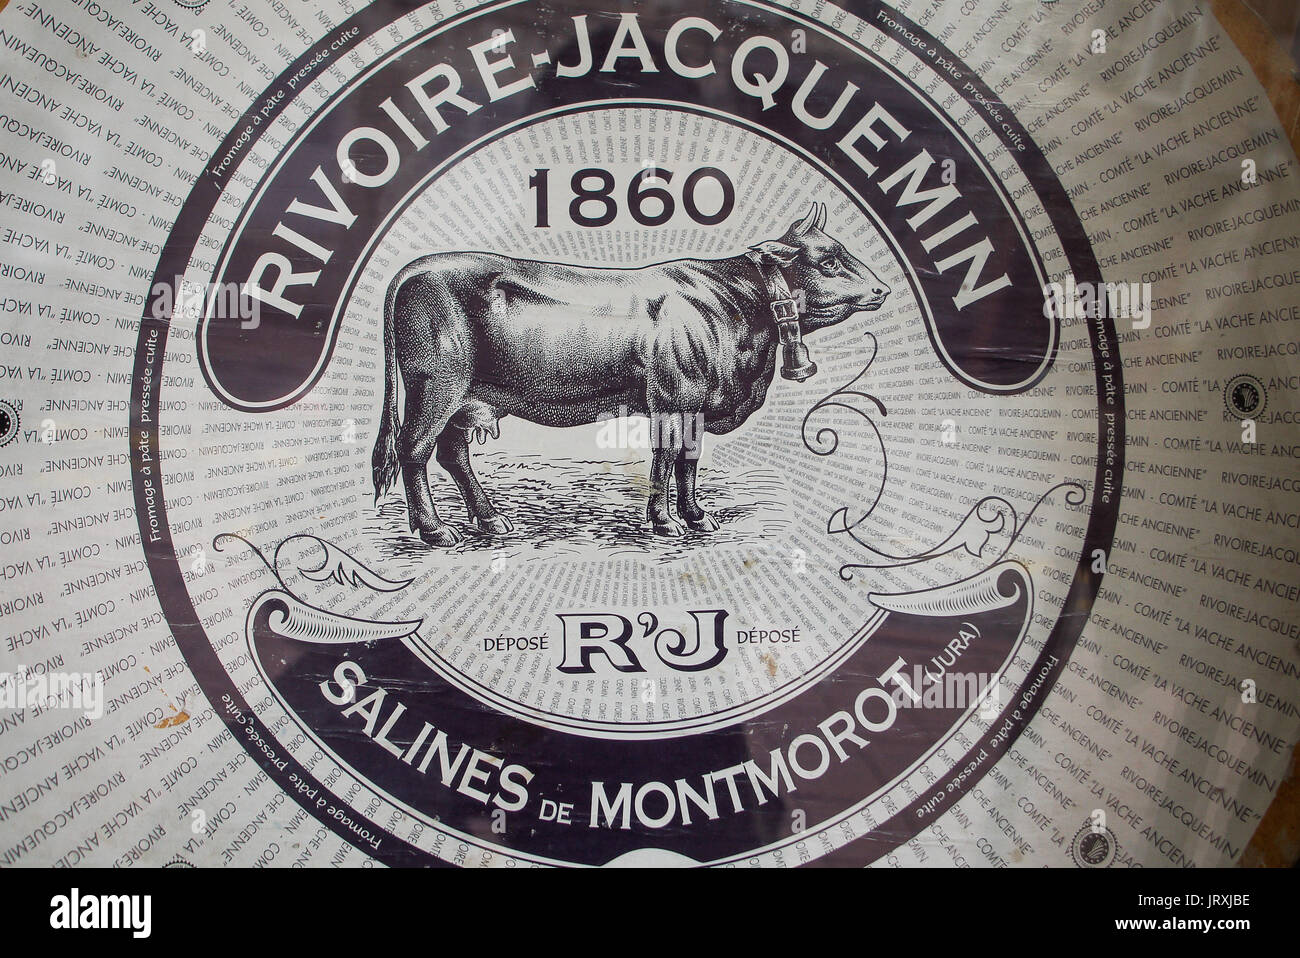 Ill. Aufkleber auf einem Comté runde Käse, Saint-Claude, Jura, Frankreich Stockfoto